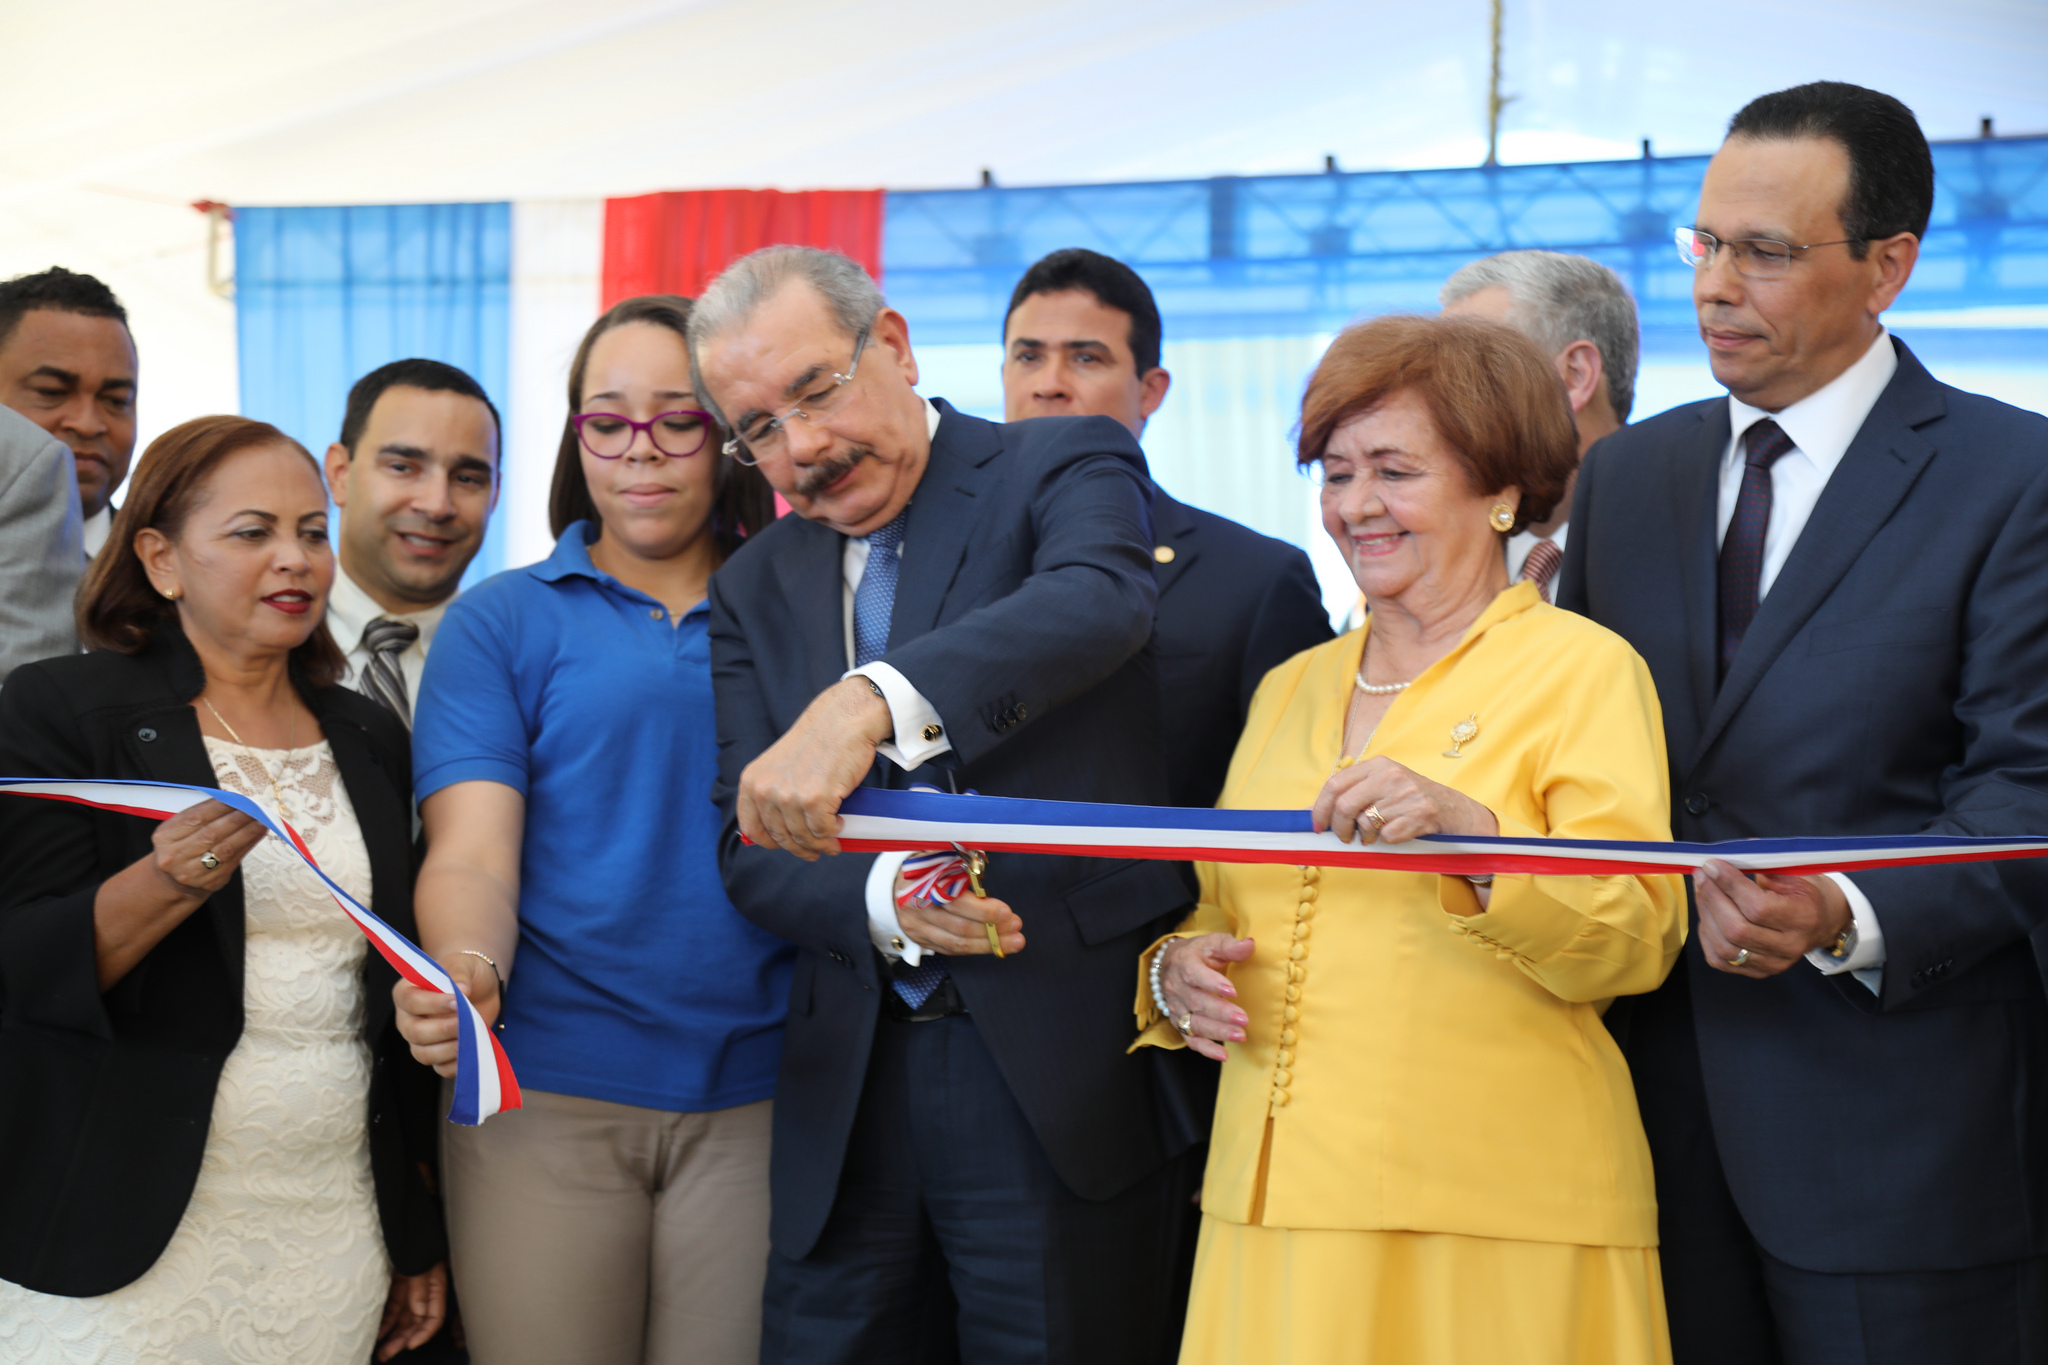  imagen Presidente Danilo Medina de pie cortando cinta junto a ministro Antonio Peña Mirabal y demás autoridades educativas 